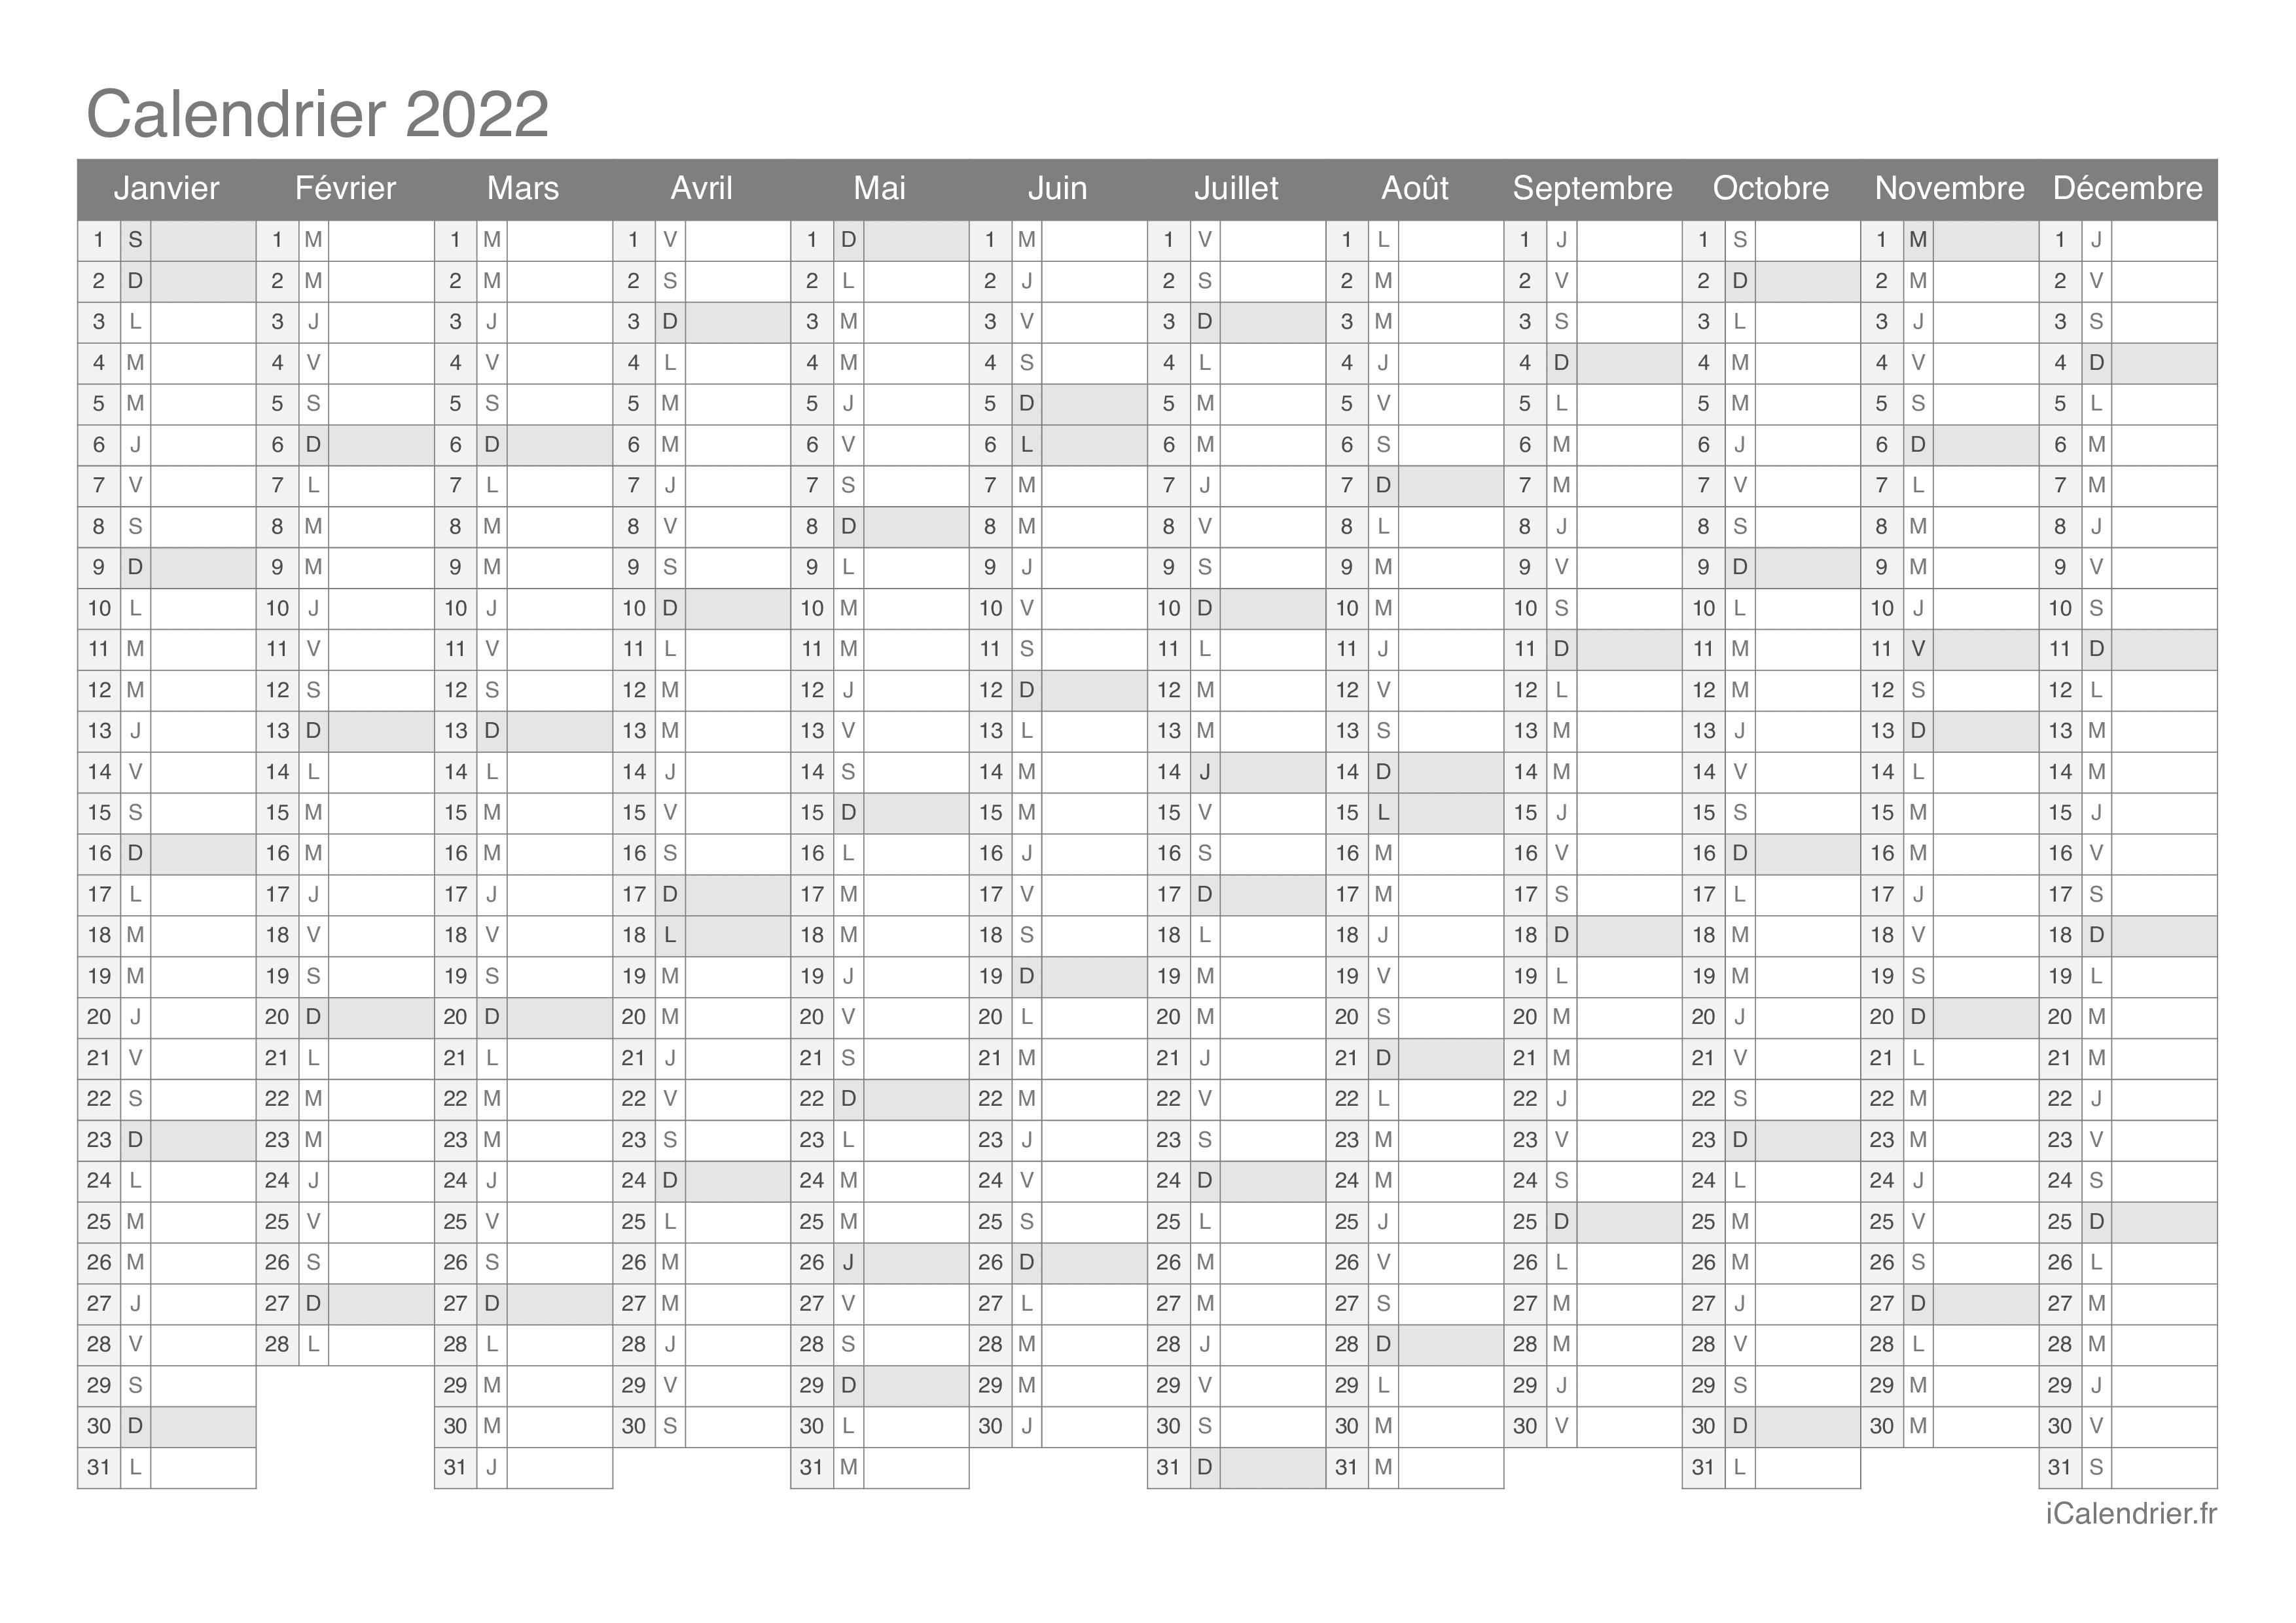 Calendrier Annuelle 2022 Calendrier 2022 à imprimer PDF et Excel   iCalendrier